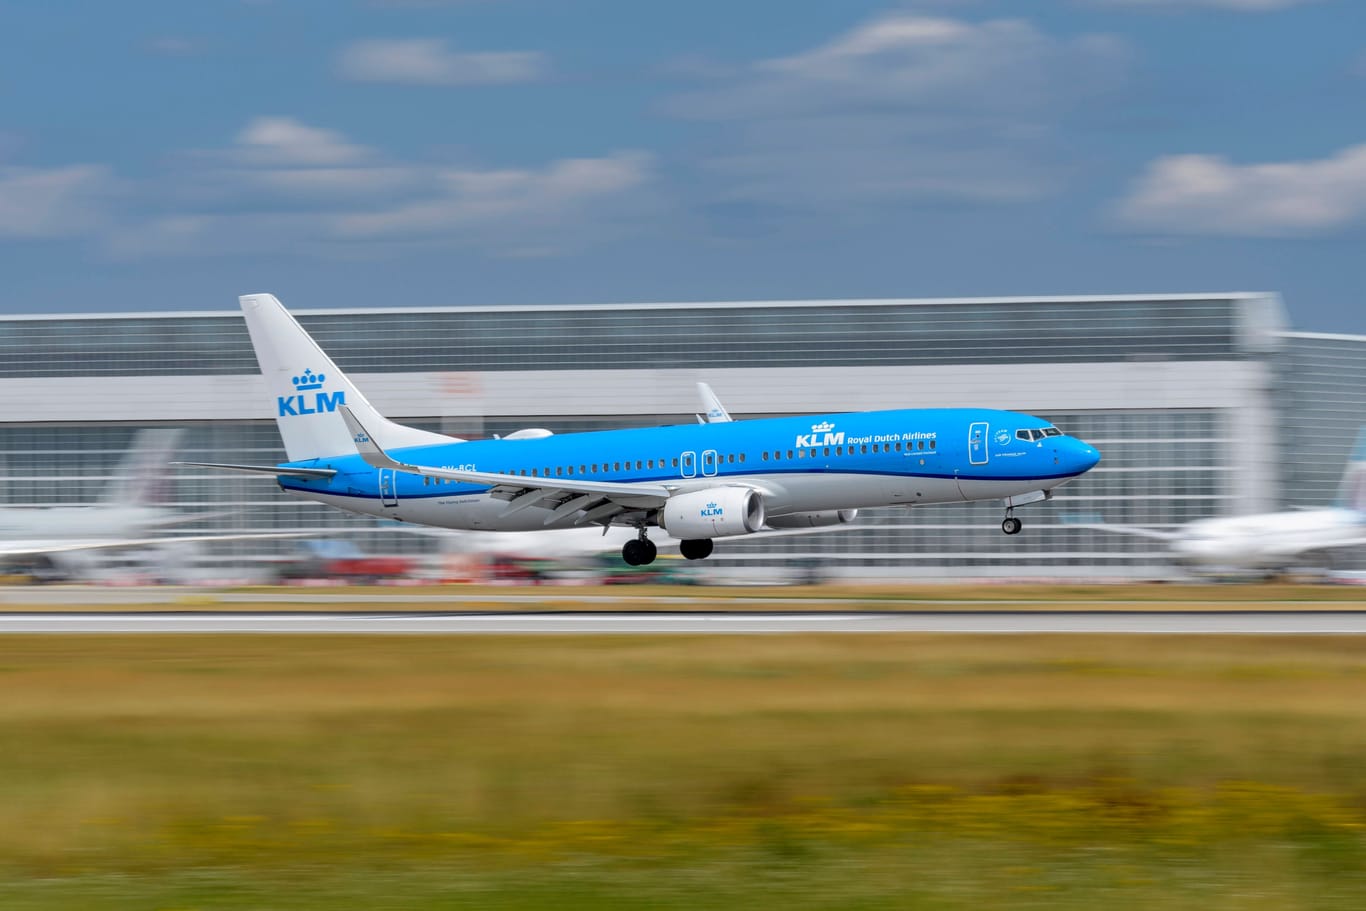 Eine Boing der Royal Dutch Airlines im Anflug auf den Flughafen München (Archivbild): Im zweiten Anlauf gelang die Landung schließlich sicher.